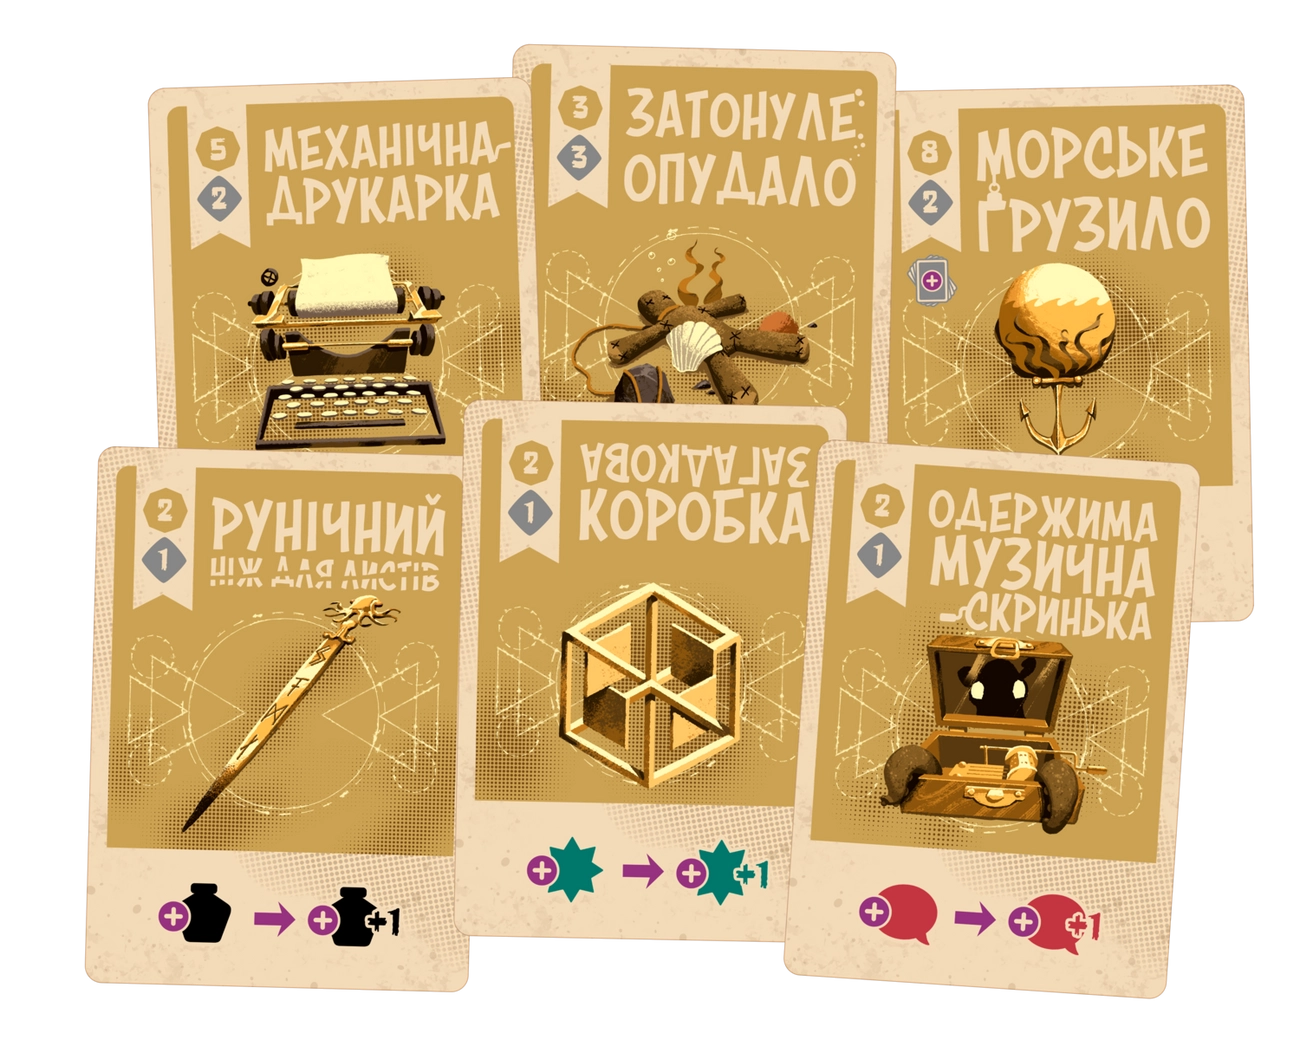 Космоспрут (Cosmoctopus) (UA) Geekach Games - Настольная игра